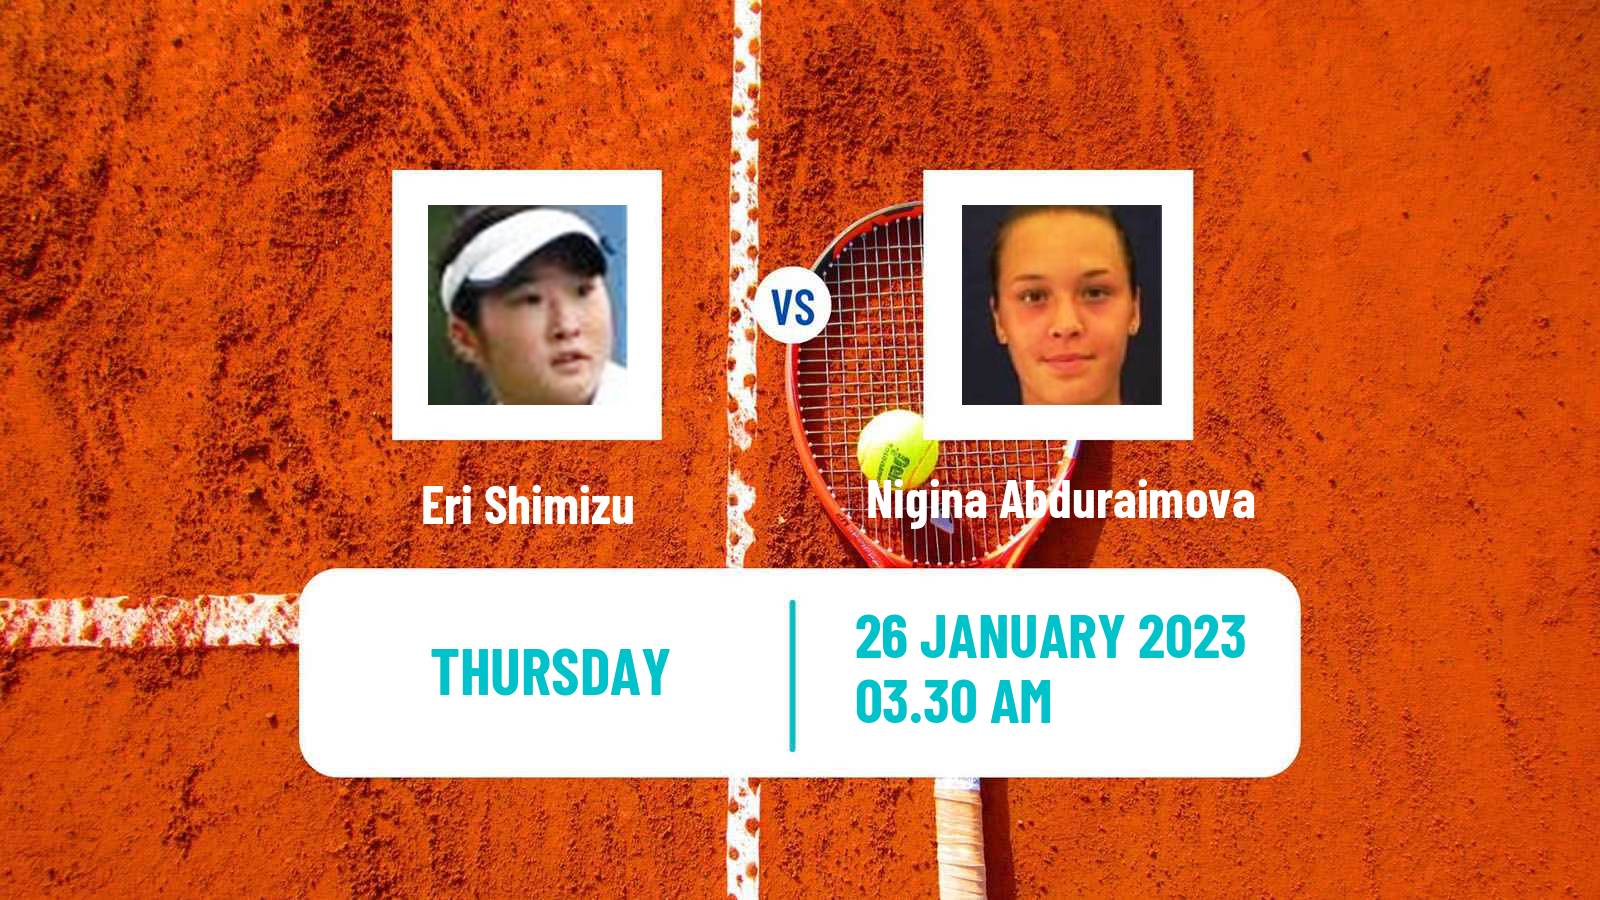 Tennis ITF Tournaments Eri Shimizu - Nigina Abduraimova